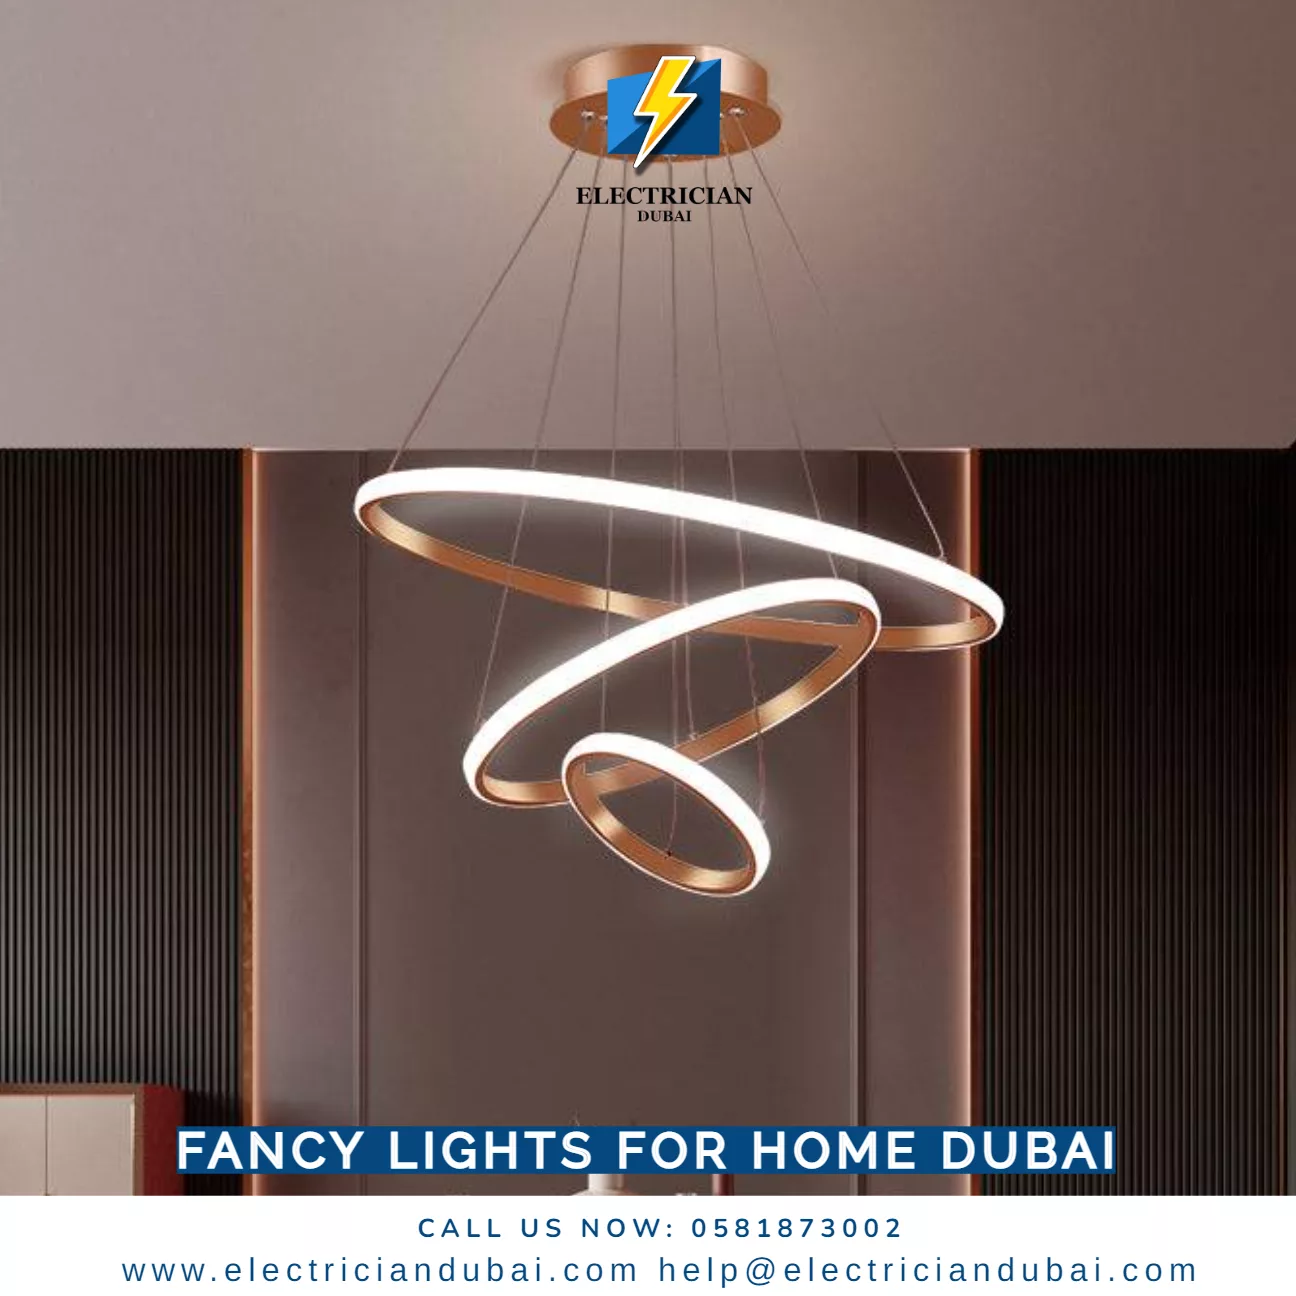 Fancy Lights For Home Dubai